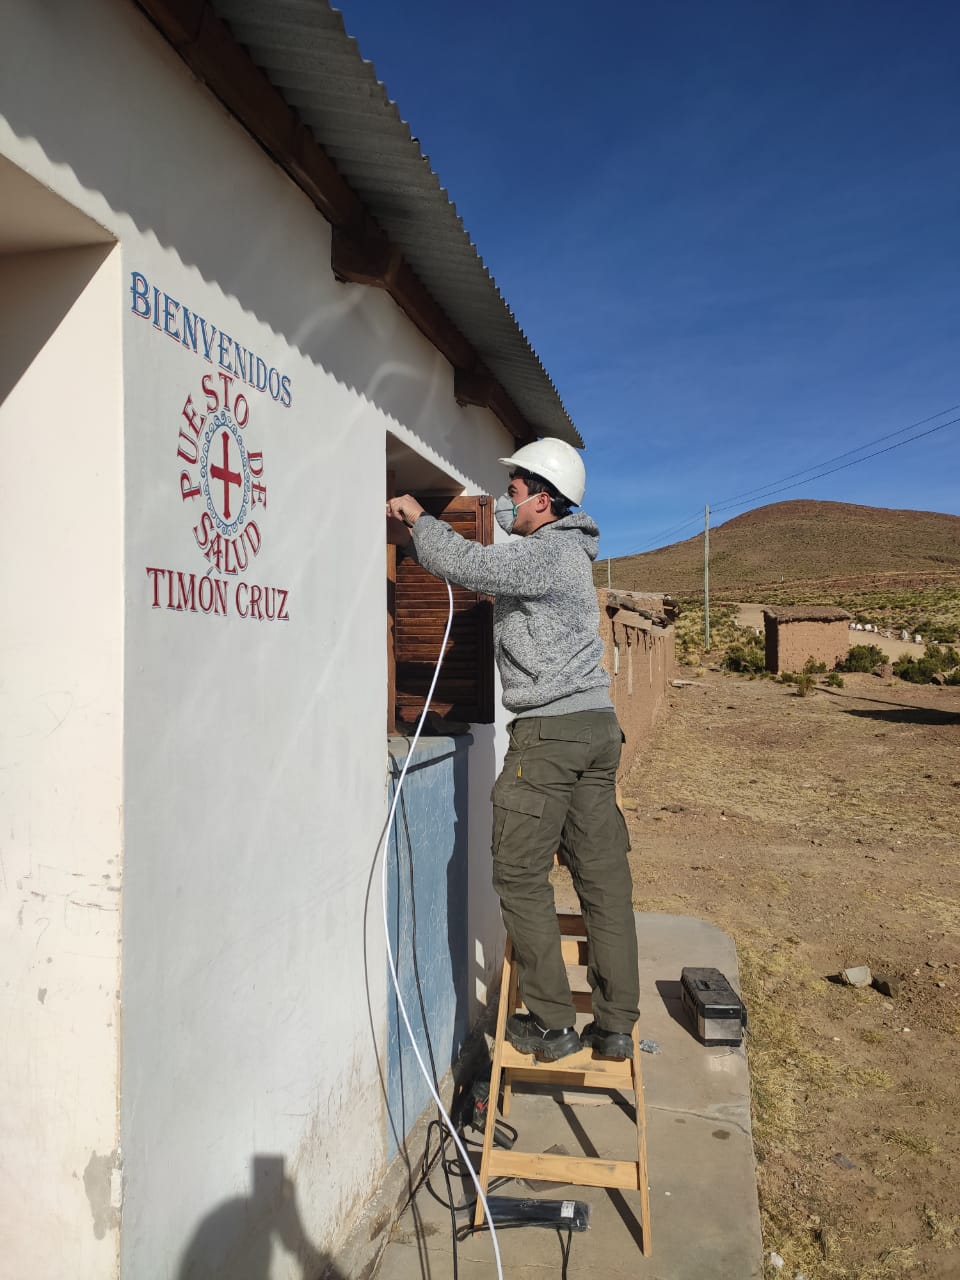 Un técnico instala una antena de internet en el Centro de Salud de Timón Cruz, en Jujuy con los cerros a lo lejos.